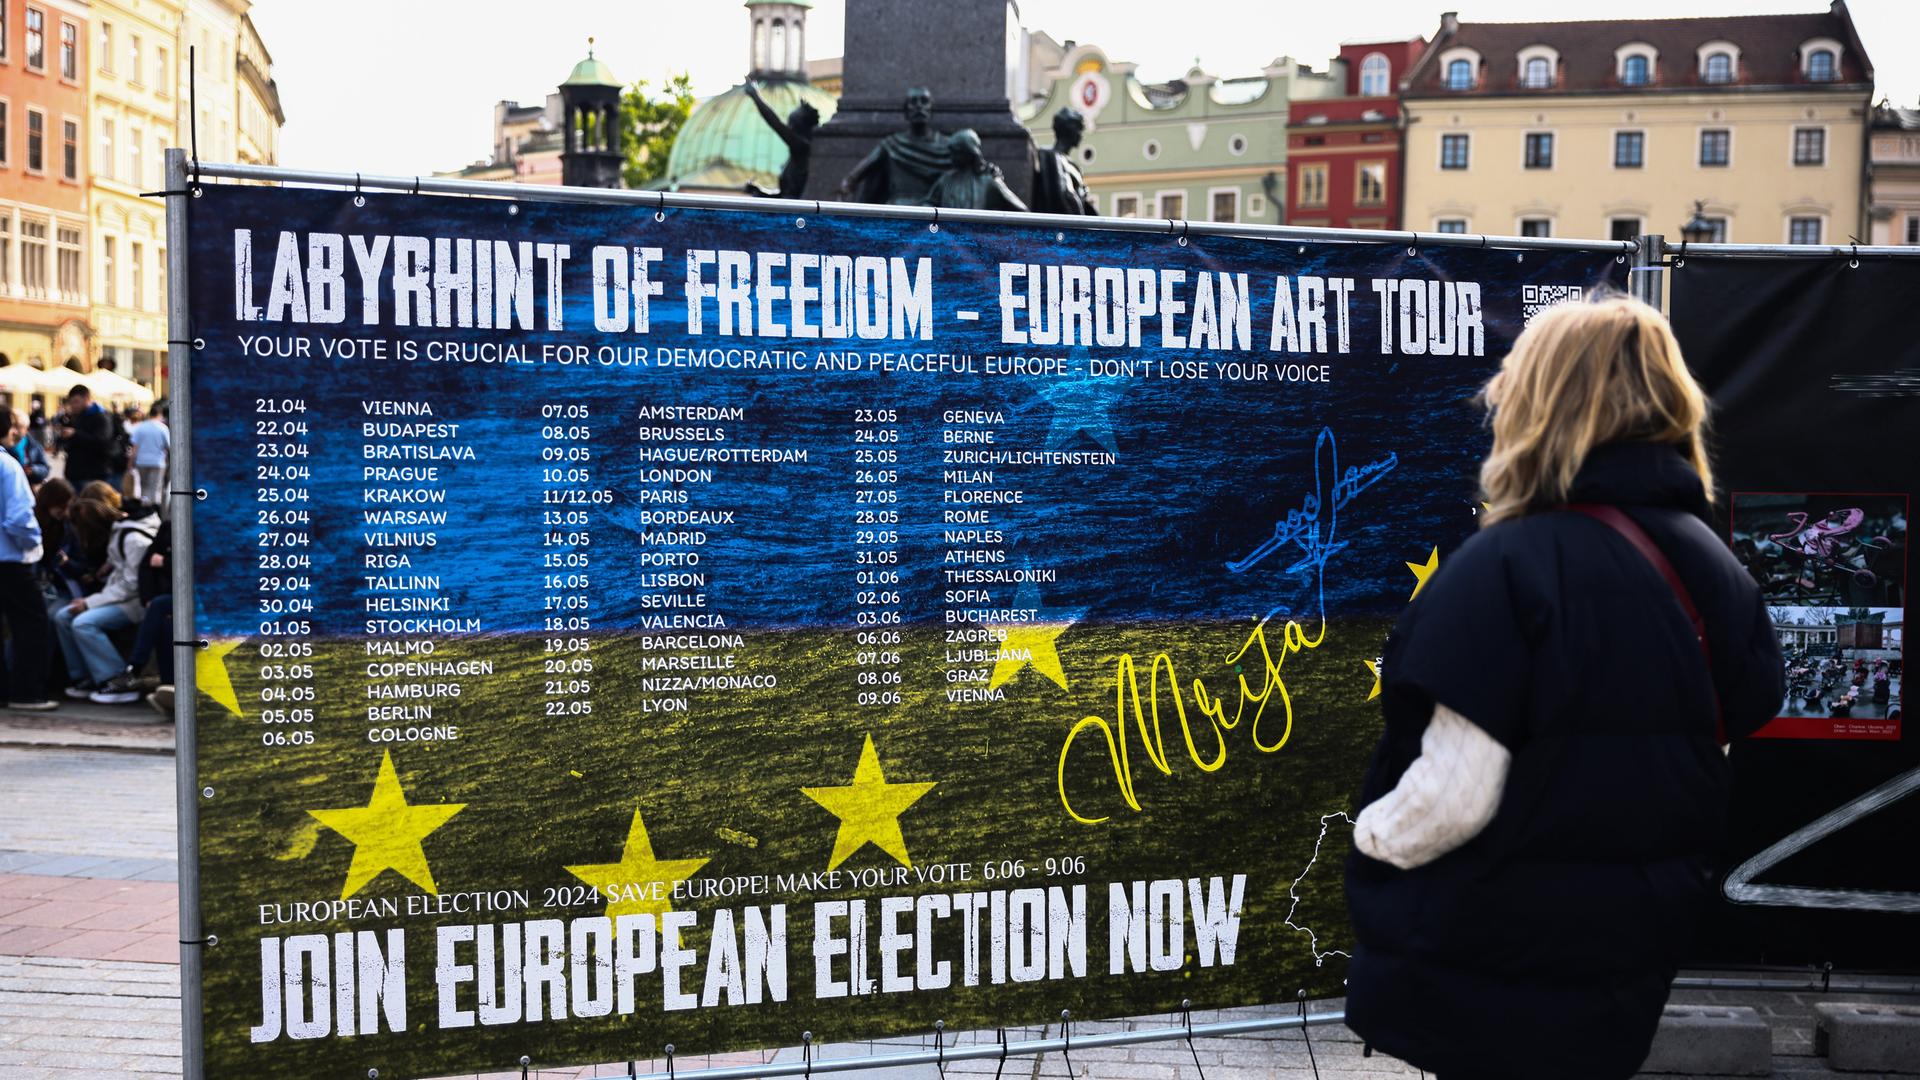 Polnische Passantin vor einem Plakat zu einer Kunstausstellung mit dem Titel: "Labyrinth Of Freedom - European Art Tour", die die Menschen zur Teilnahme an der EU-Wahl anregen will. 